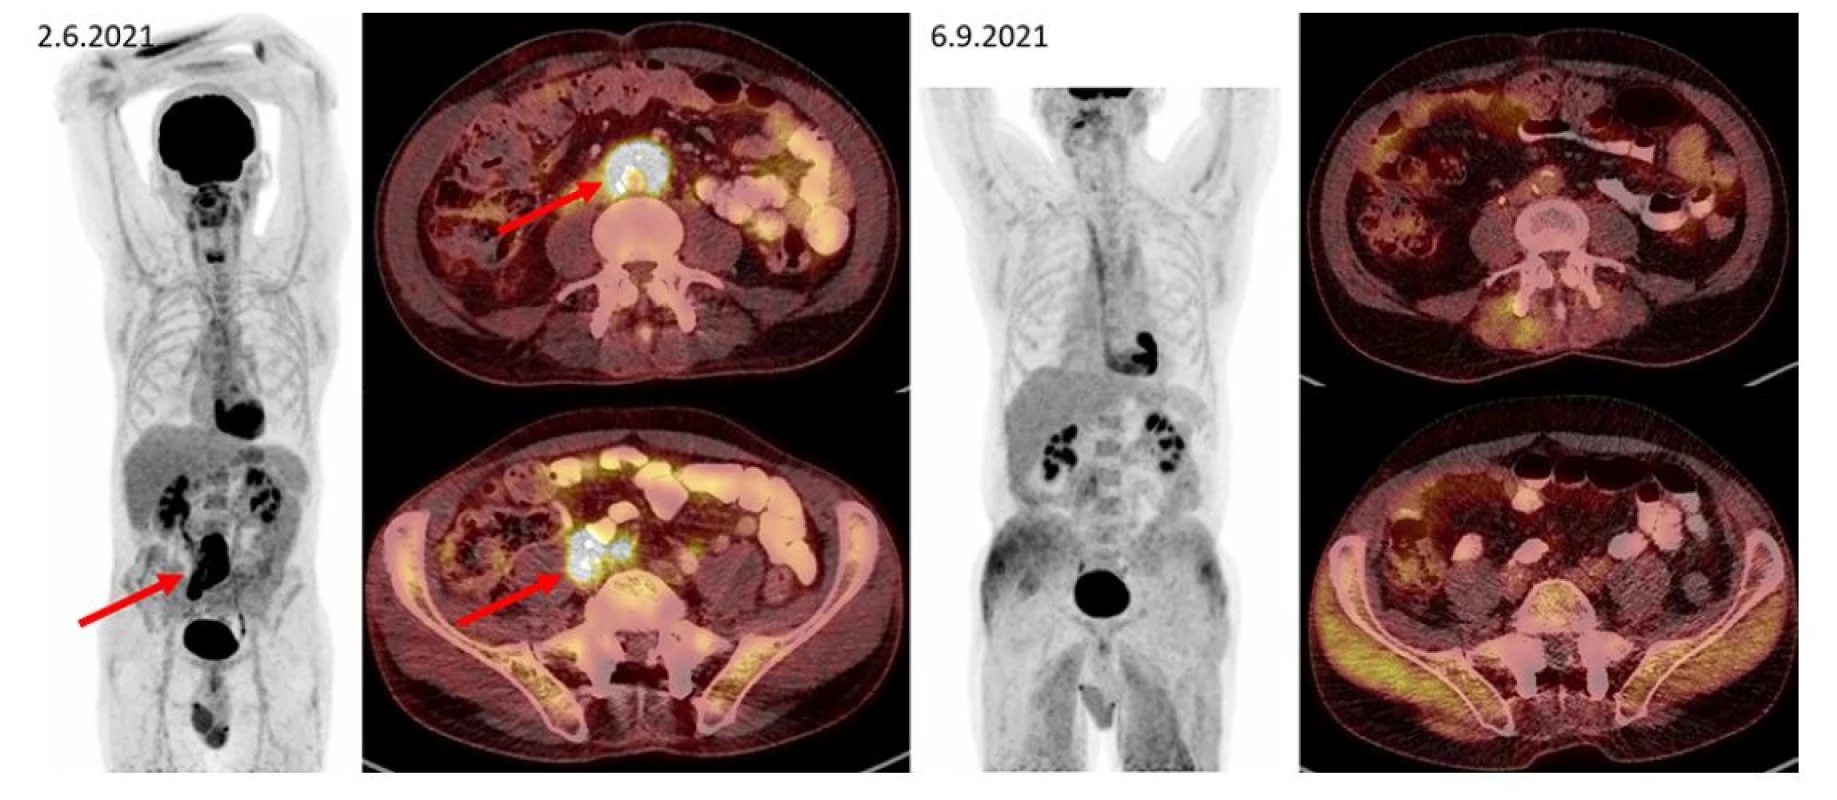 F–FD6 PET/CT vyšetření u pacienta s ložiskem retroperitoneální fibrózy s histologicky potvrzenou diagnózou IgG4-RD. Šipkami jsou označeny
kraniální i kaudální porce metabolicky aktivní infiltrace v retroperitoneu obkružující kaudální část břišní aorty, oblast bifurkace a dále odstup pravostranných
společných ilických cév (v infiltrátu je zavzat pravostranný ureter s JJ stentem). Pacient byl léčen rituximabem, dexametazonem a cyklofosfamidem.
Po této léčbě tato metabolicky aktivní infiltrace při kontrolním vyšetření zaniká. Další akumulace radiofarmaka v rámci variant fyziologického zobrazení